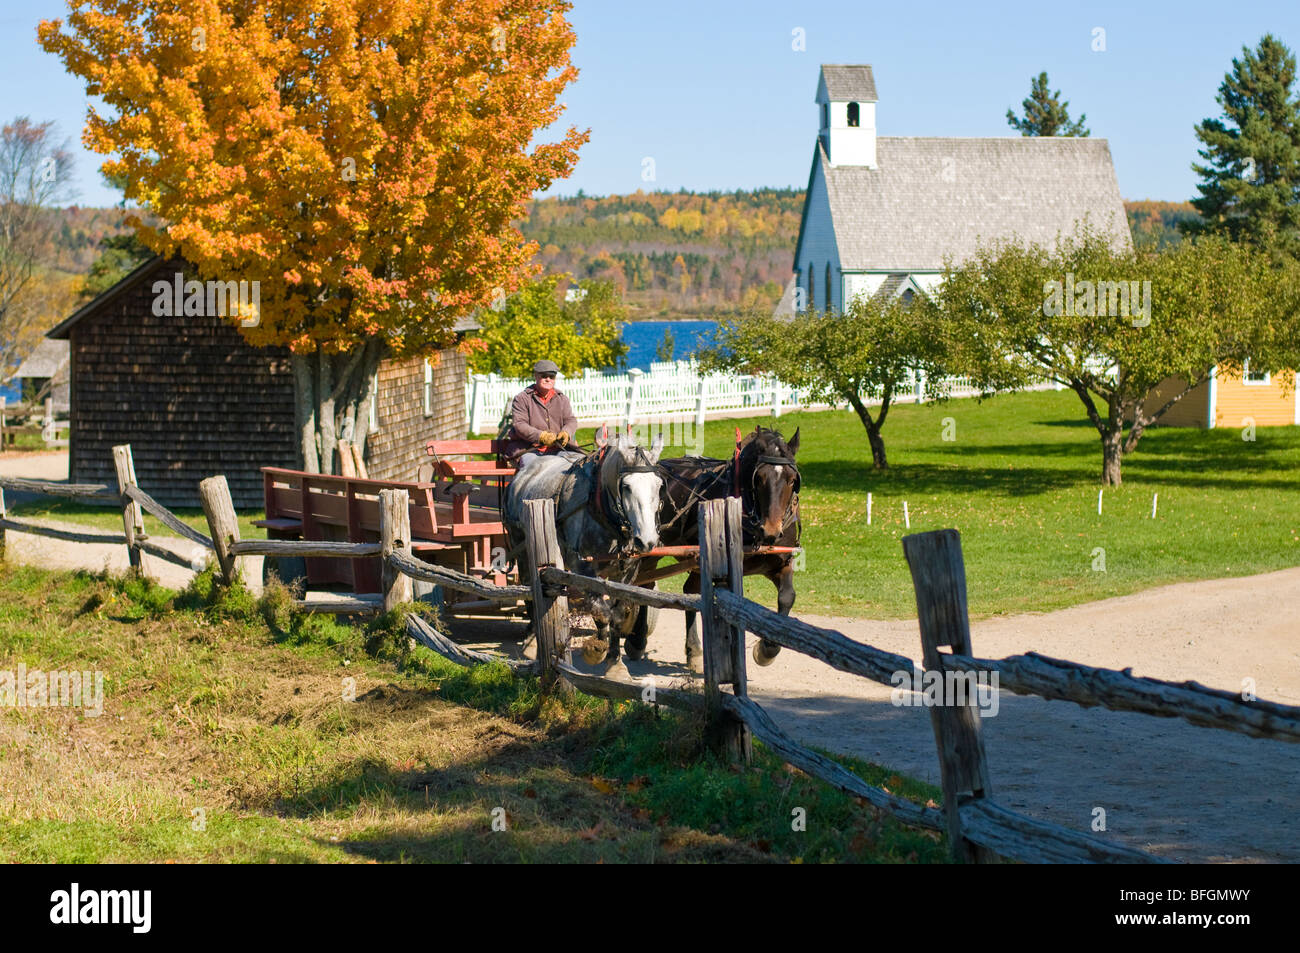 Hombre que conducía los caballos y carruajes, Reyes, asentamiento histórico aterrizaje Fredericton, Nuevo Brunswick Foto de stock